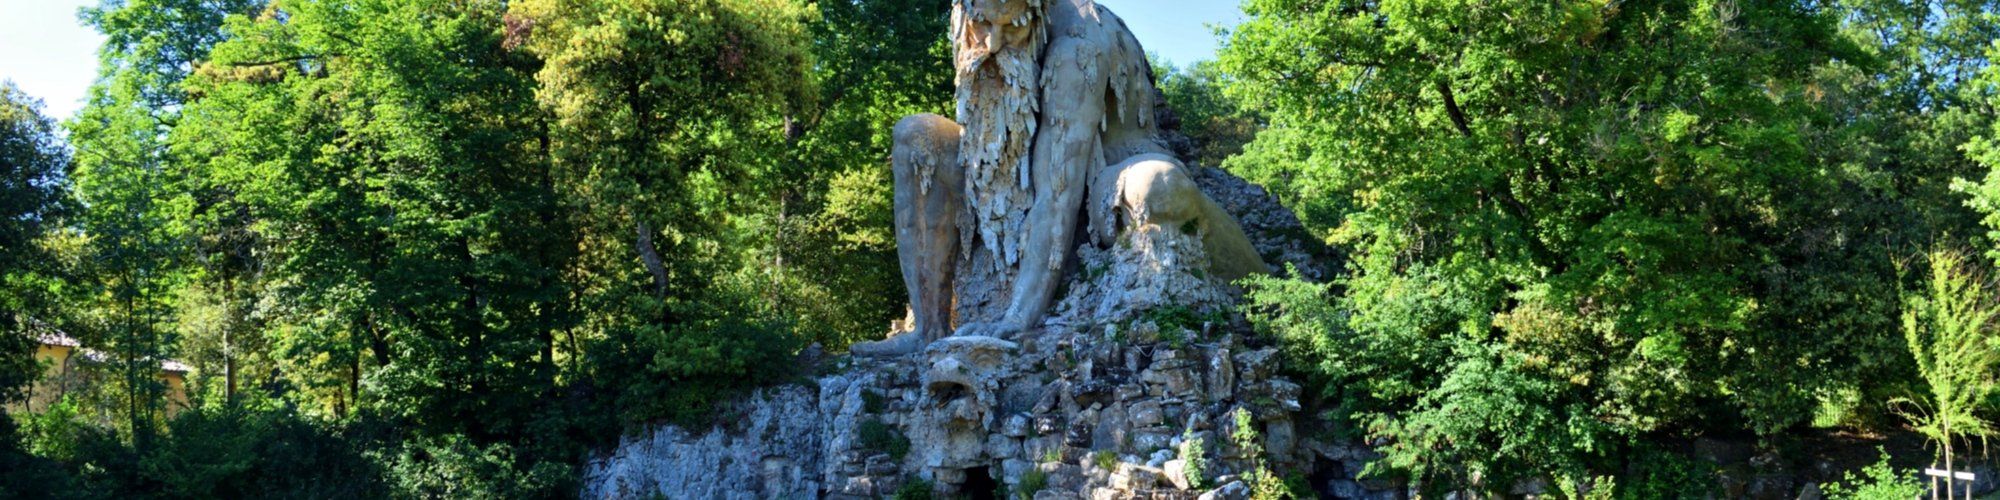 Il Colosso dell'Appennino del Giambologna, scultura situata a Firenze nel parco di Villa Demidoff